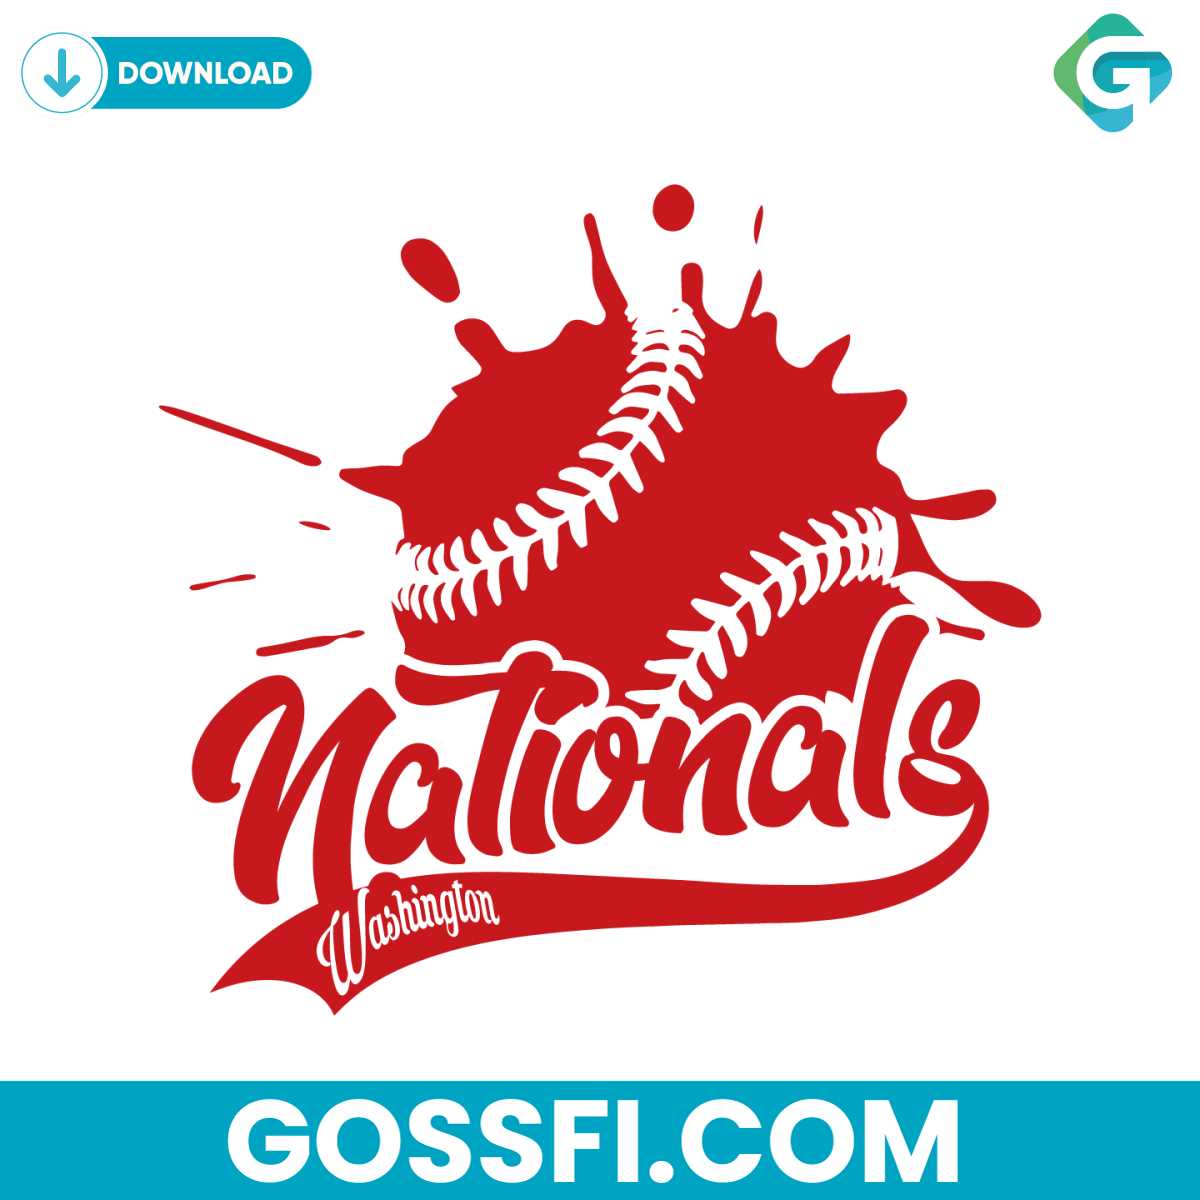 washington-nationals-baseball-svg-cricut-digital-download